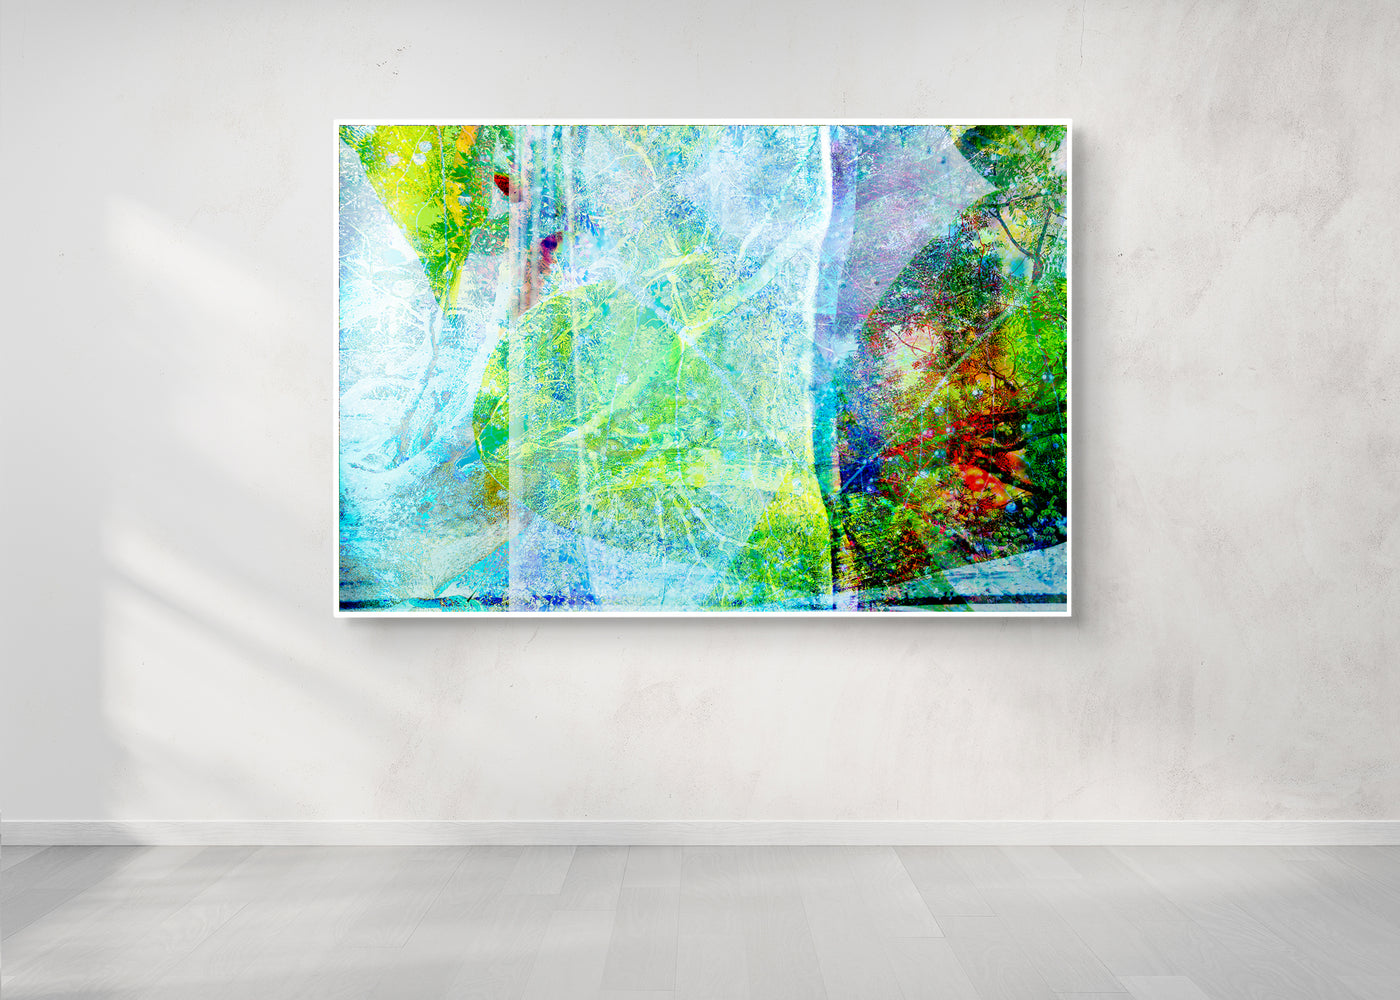 FantasyForrest6804 leinen, Bild auf Leinwand mit weissem SchattenfugenrahmenBlack frame hanging on a wall mockup 3d rendering